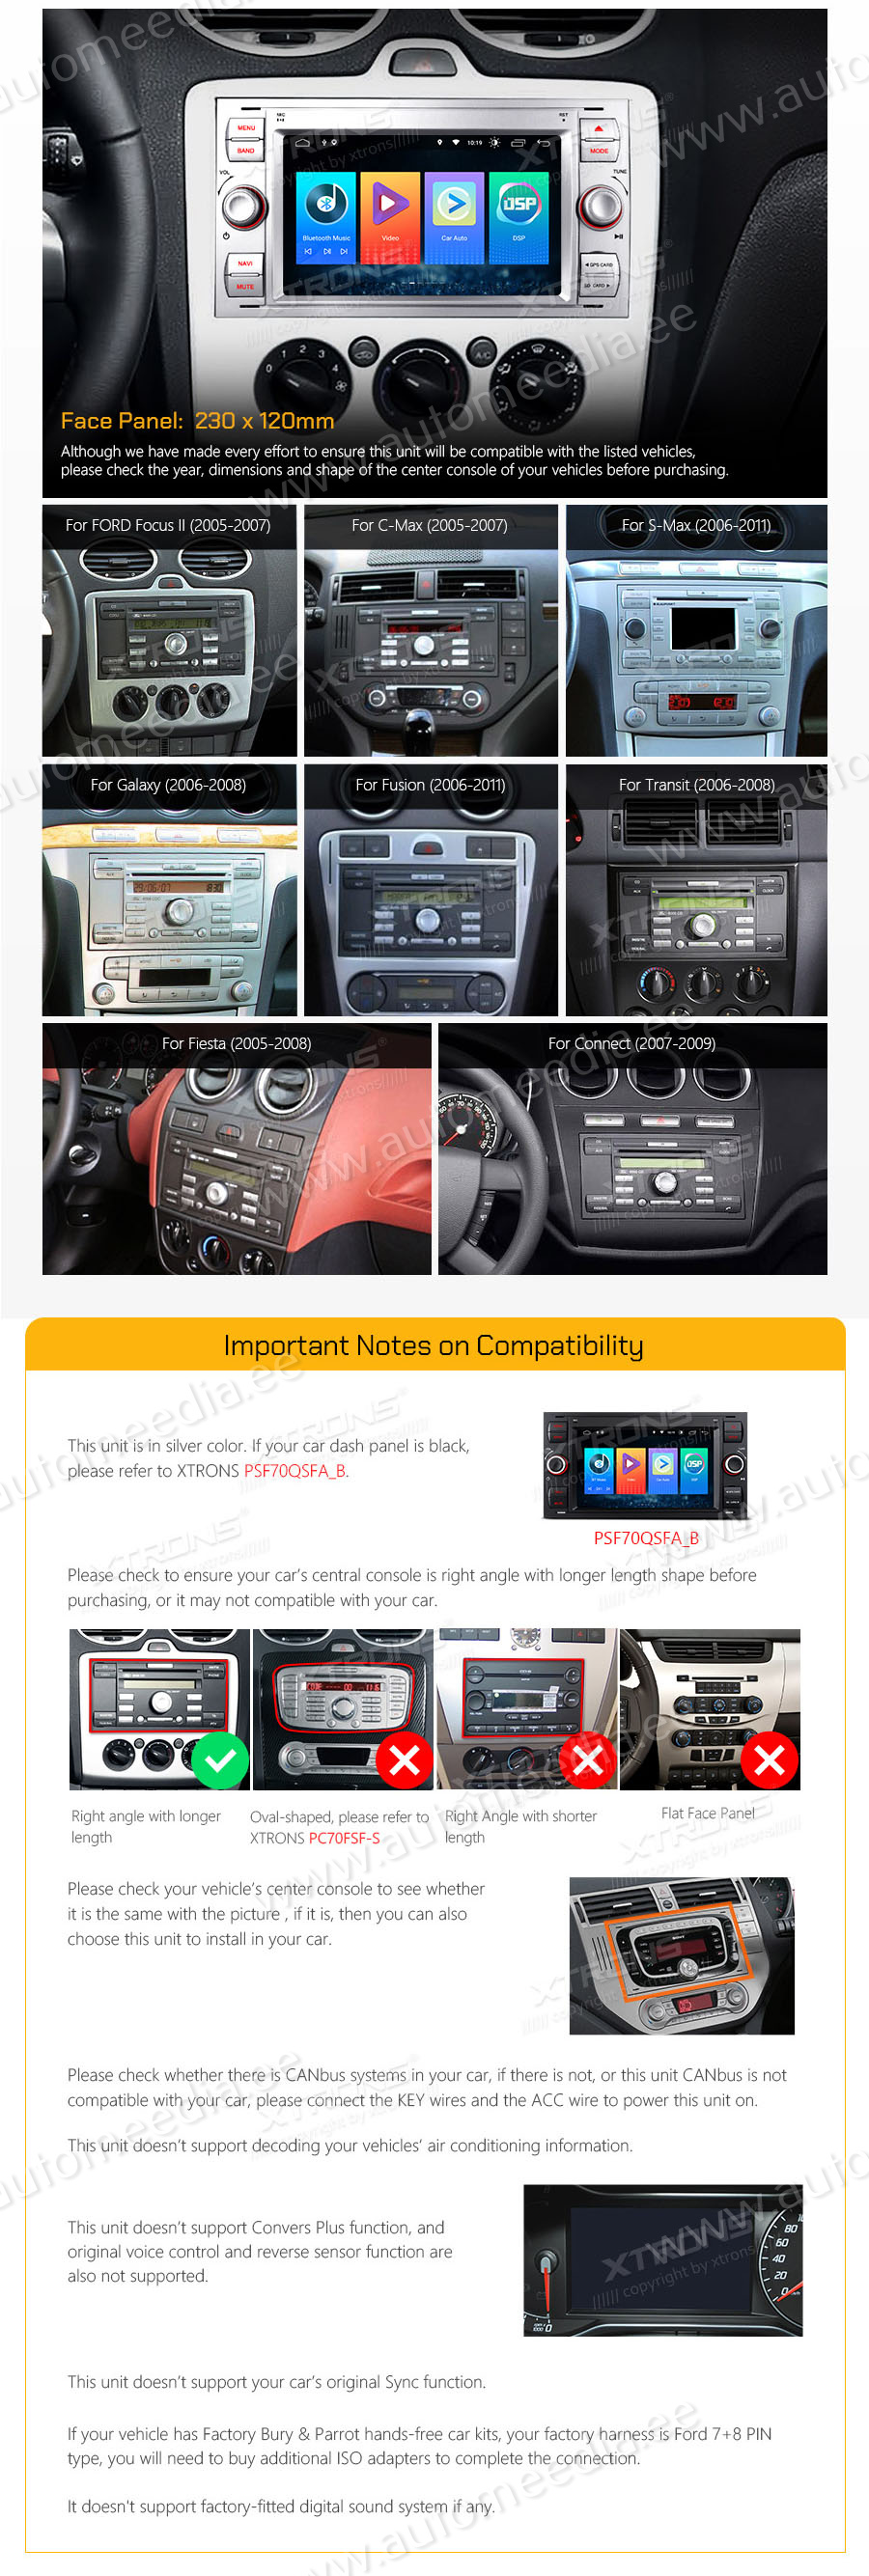 Ford C-Max | S-Max | Galaxy | Focus | Transit (2005-2011)  совместимость мультимедийного радио в зависимости от модели автомобиля